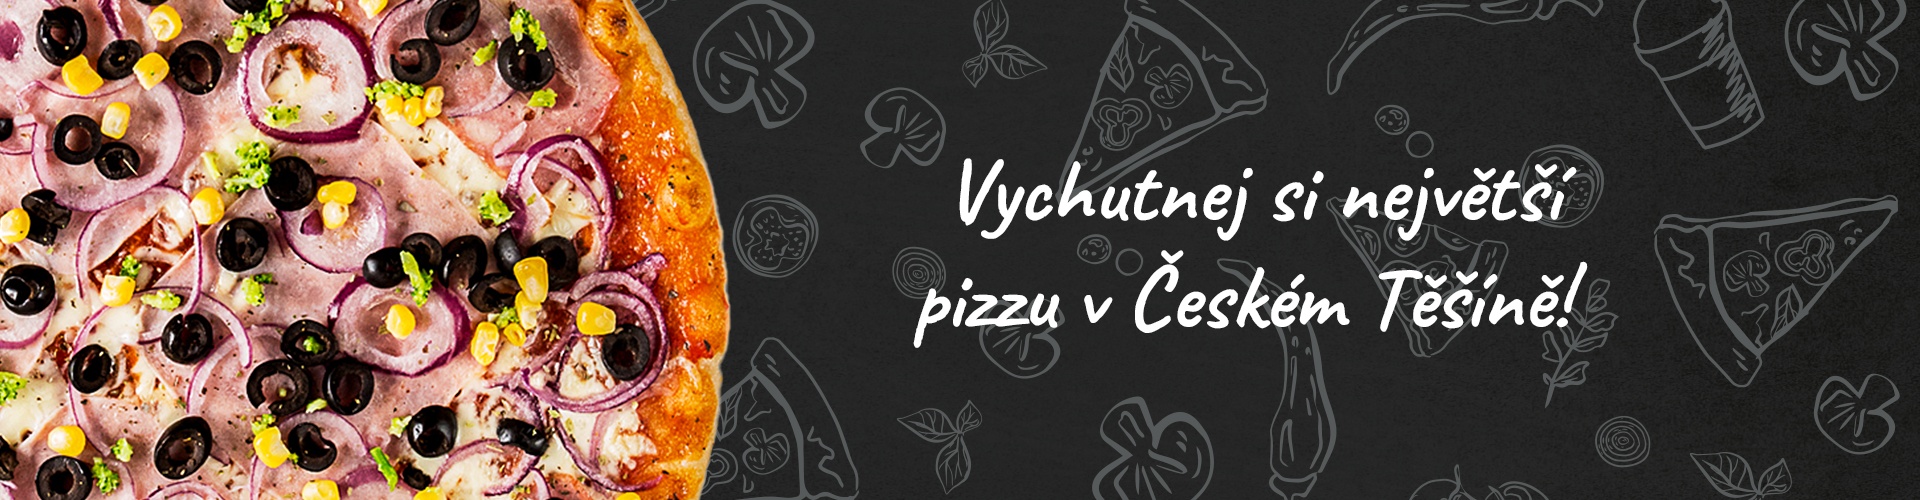 Vychutnej si největší pizzu v Českém Těšíně!